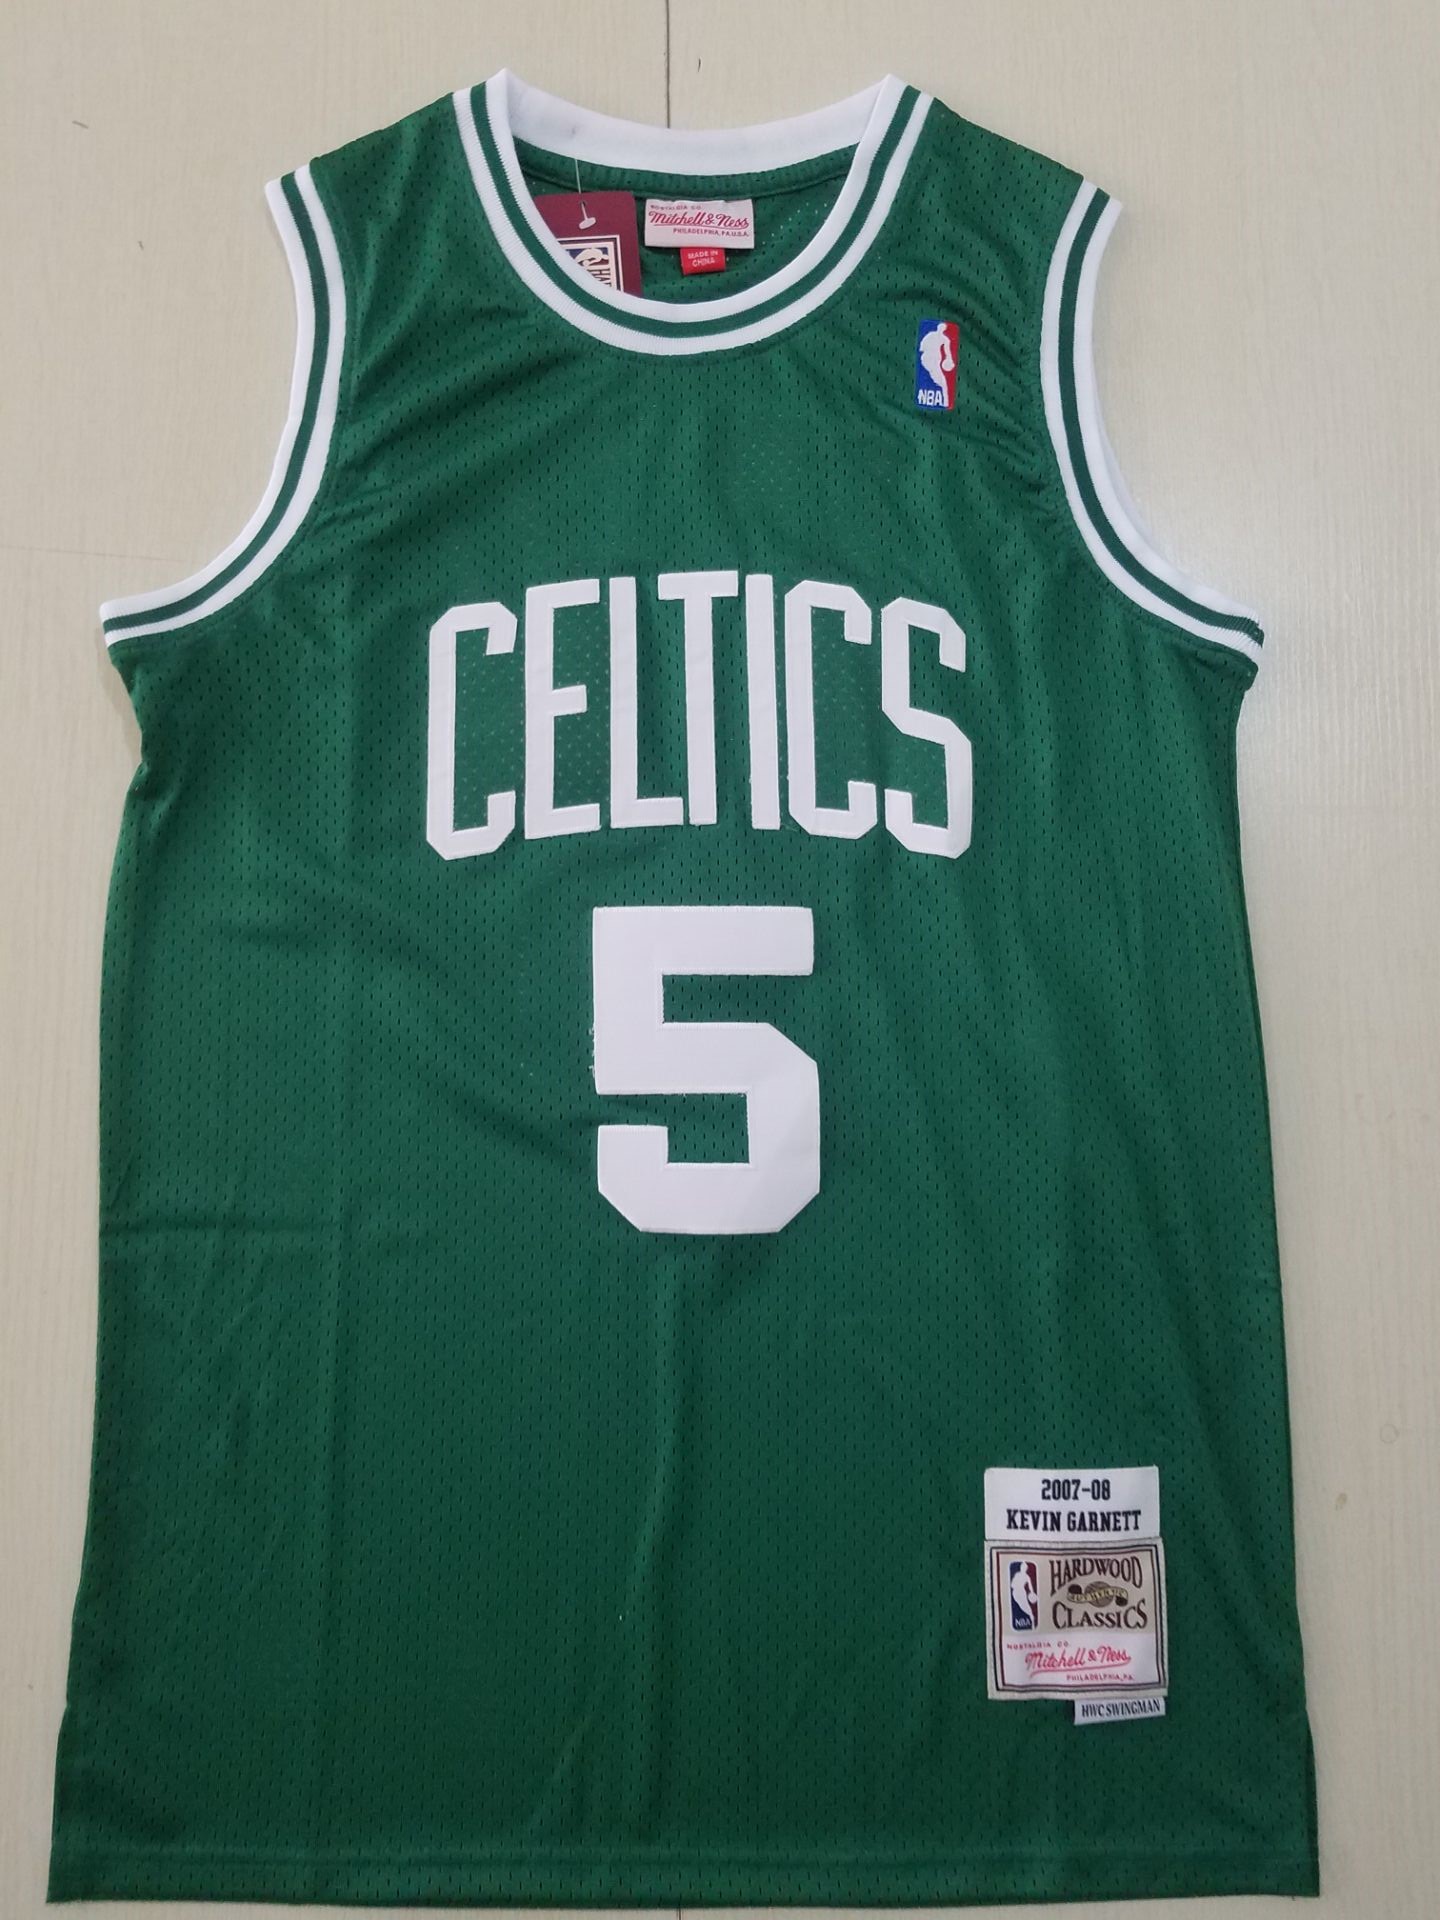 2020 Men Boston Celtics #5 Garnett green Adidas NBA Jersey->golden state warriors->NBA Jersey